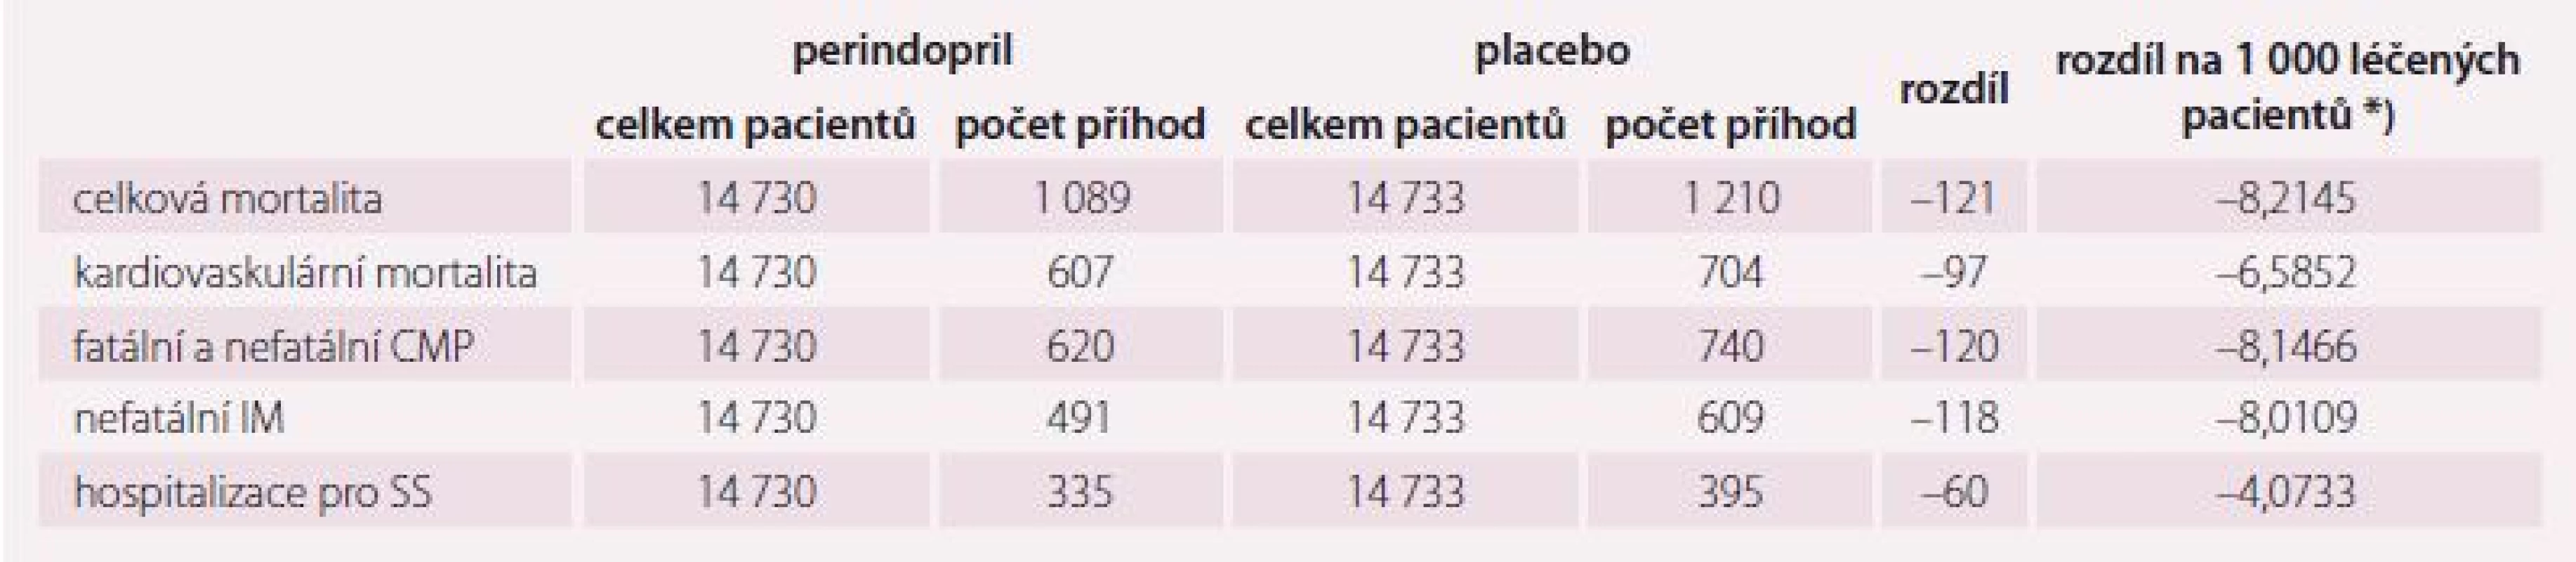 Výsledky podávání perindoprilu (a indapamidu) vyplývající z kombinované analýzy studií PROGRESS, EUROPA a ADVANCE [12].